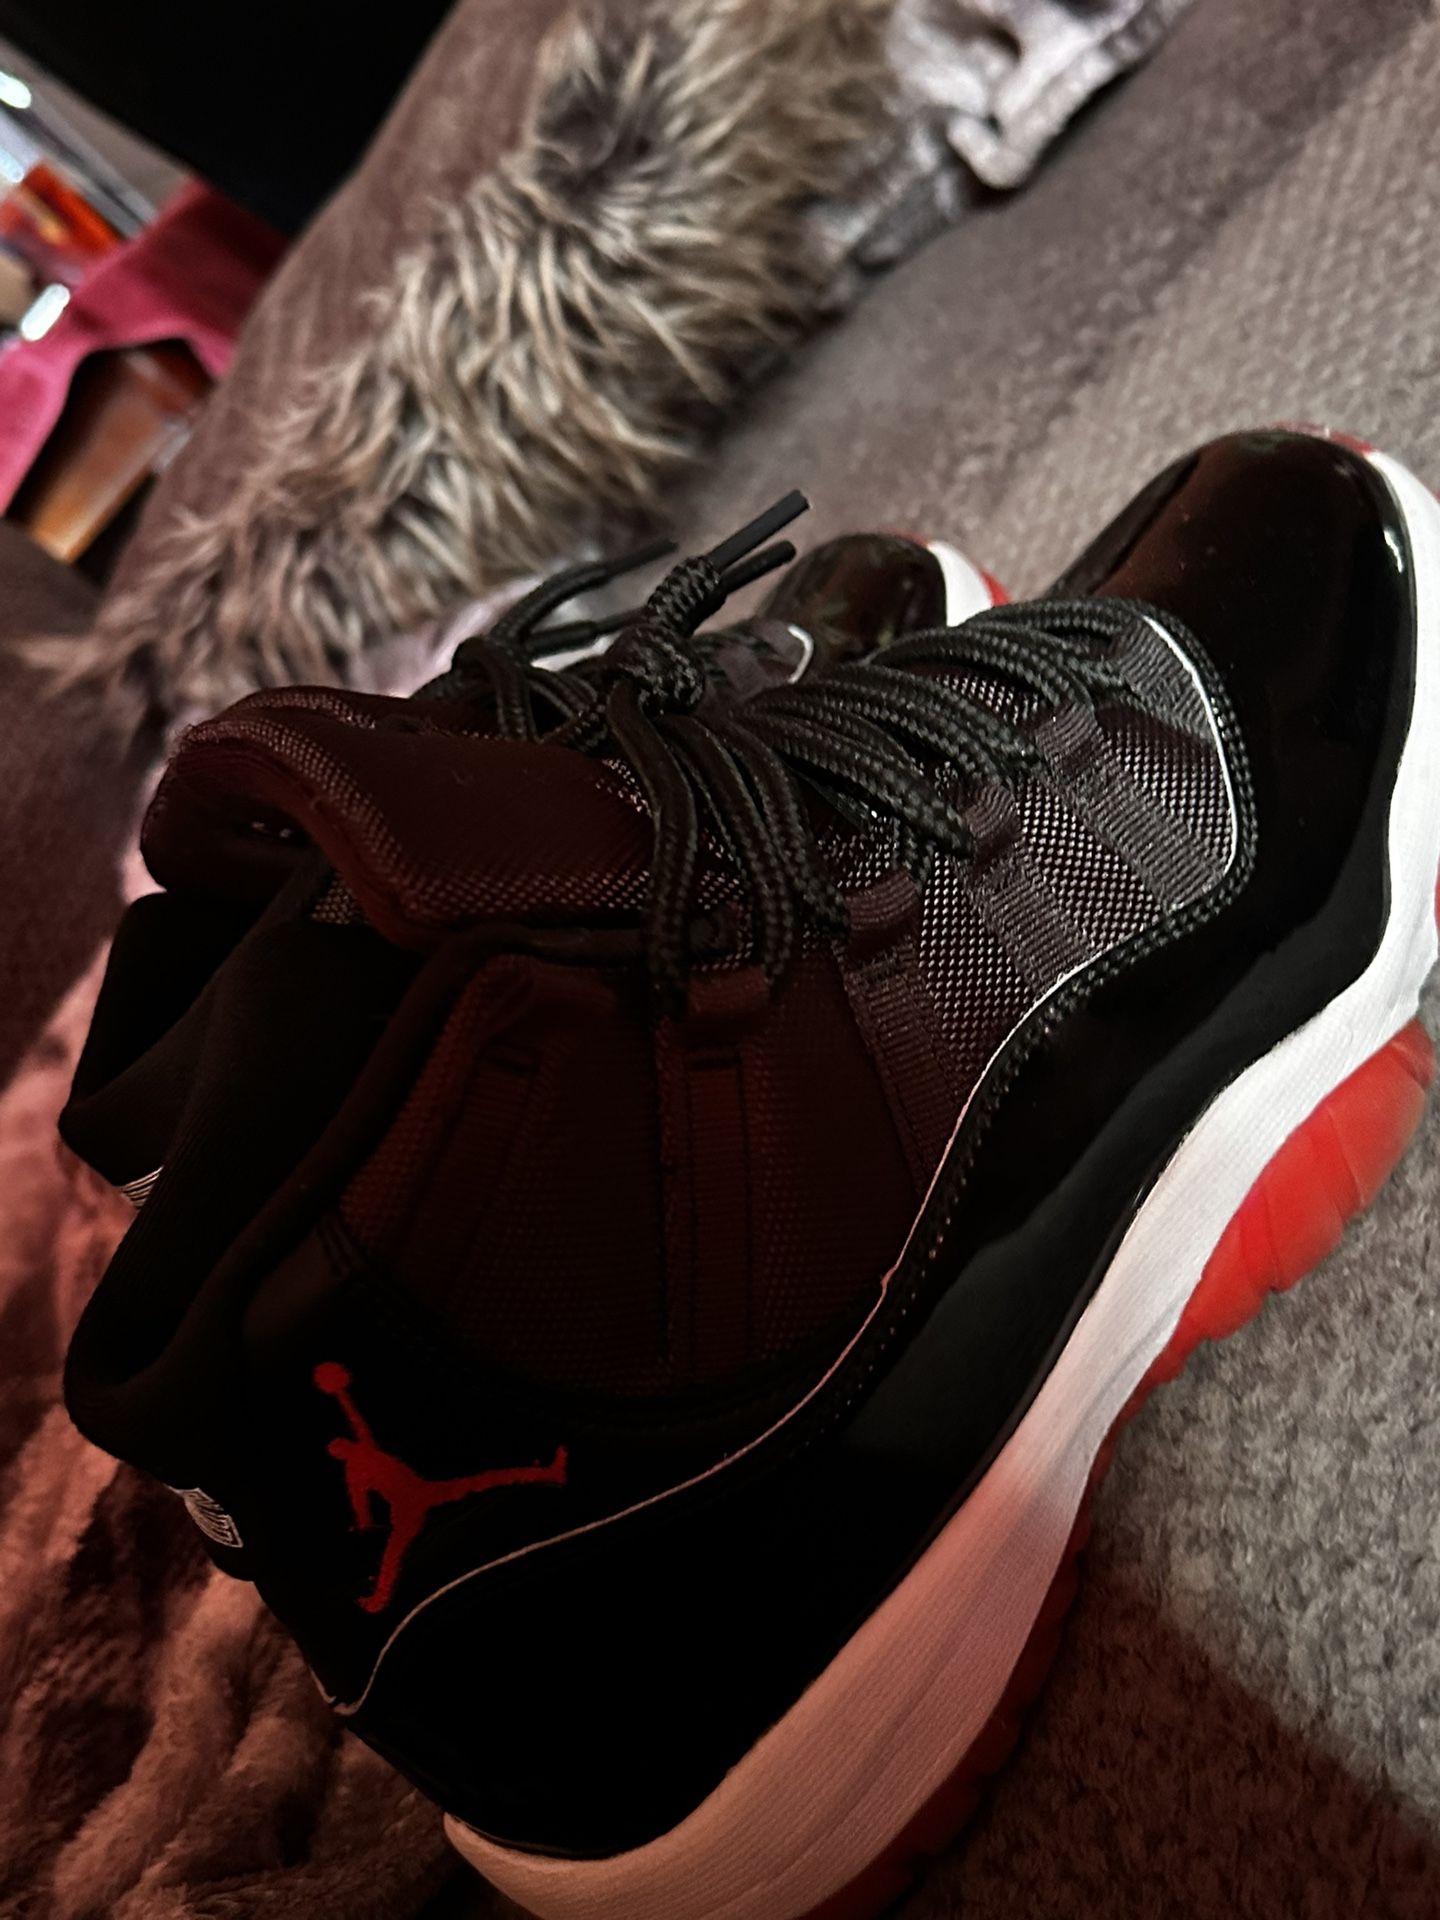 Jordan 11s Size 7.5